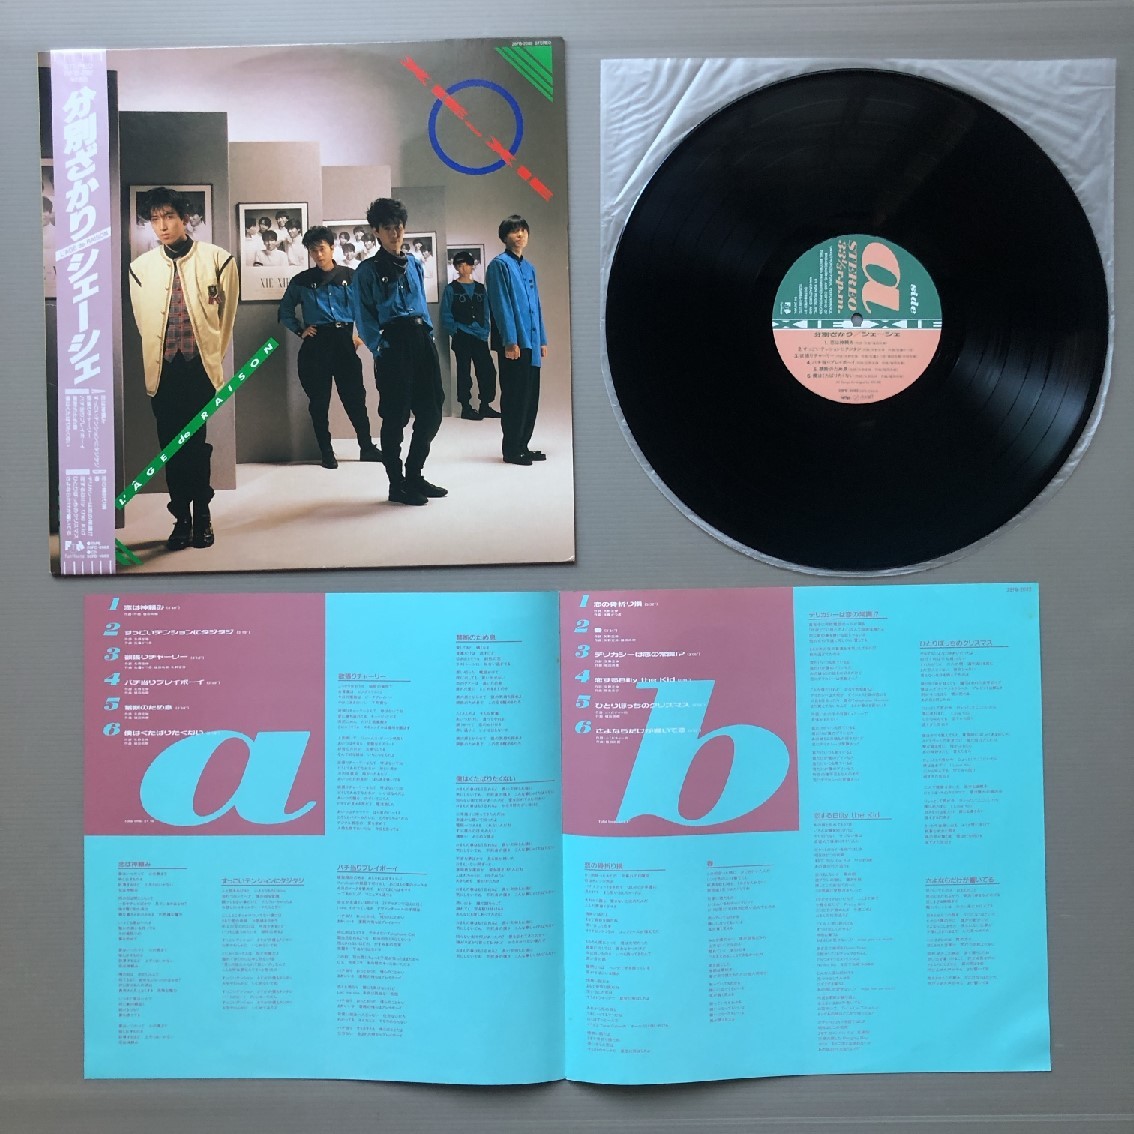 傷なし美盤 レア盤 シェーシェ Xie-Xie 1987年 LPレコード 分別ざかり L'AGE de RAISON 国内盤 オリジナルリリース盤 帯付 J-Pop_画像5